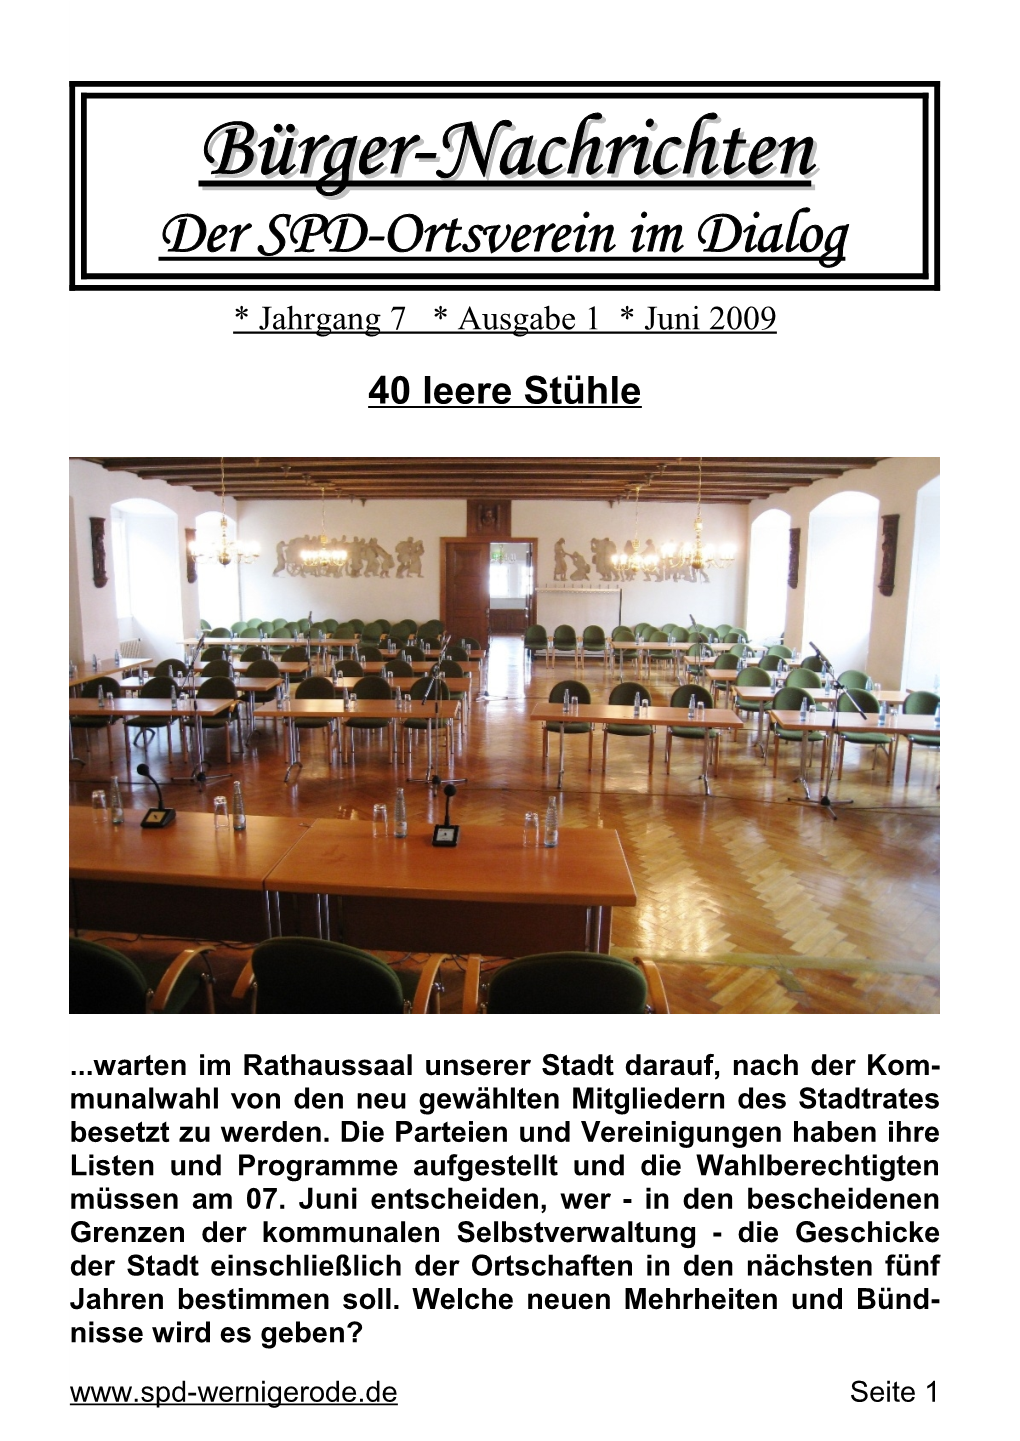 Bürger-Nachrichtenbürger-Nachrichten Der SPD-Ortsverein Im Dialog * Jahrgang 7 * Ausgabe 1 * Juni 2009 40 Leere Stühle